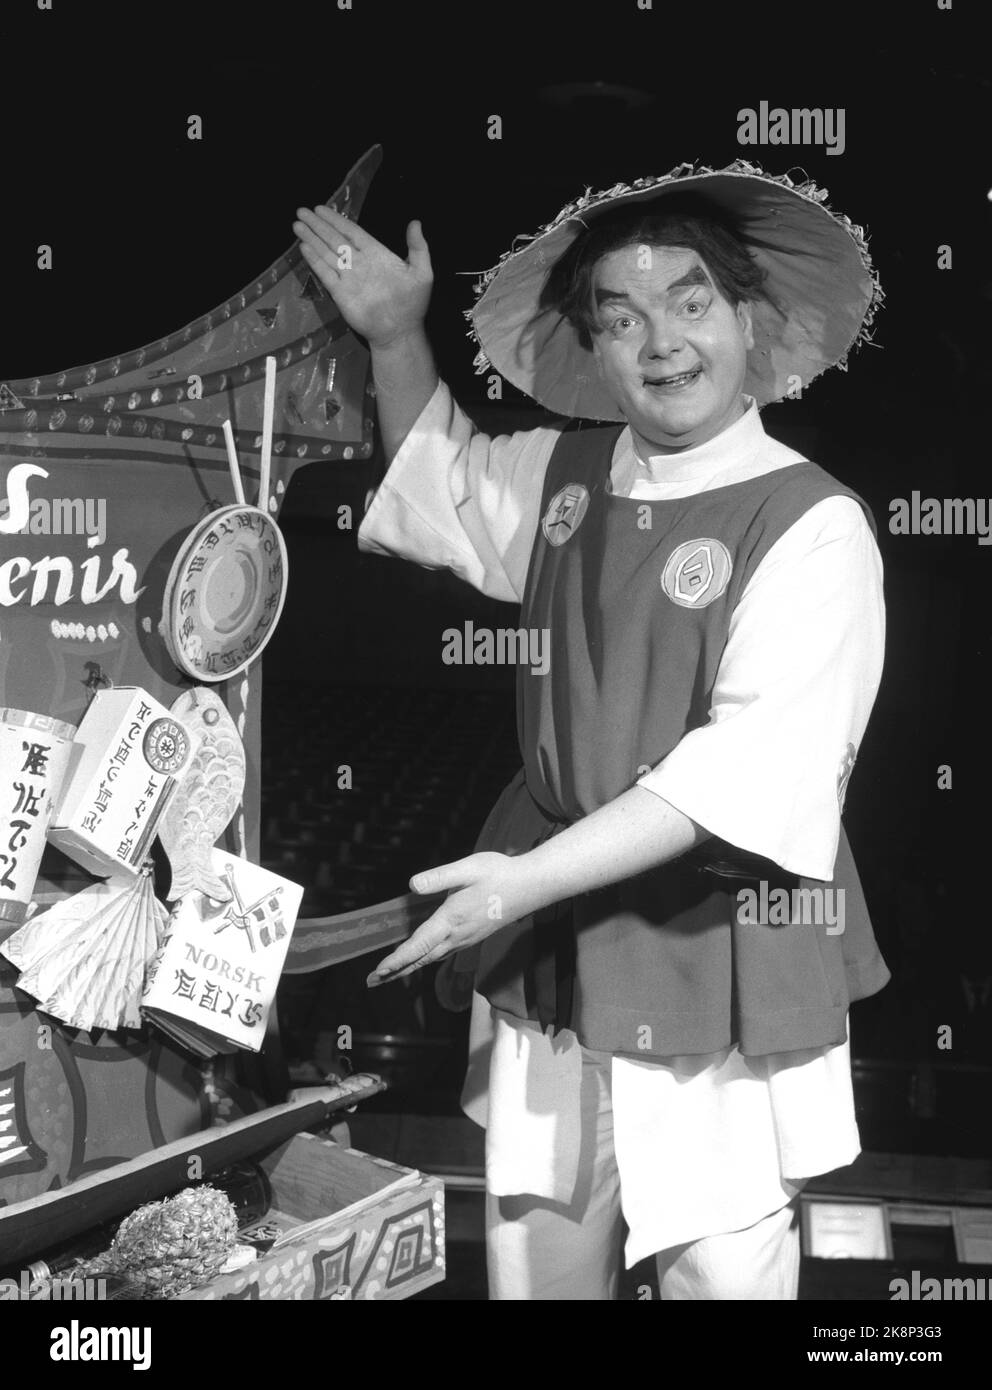 Oslo 19580201. El actor Willie Hoel juega en la obra 'The Earth Round' con Leif Juster. Aquí en sombrero de paja como vendedor de souvenirs chino-noruego. Foto: Kaare Nymark Current / NTB Foto de stock